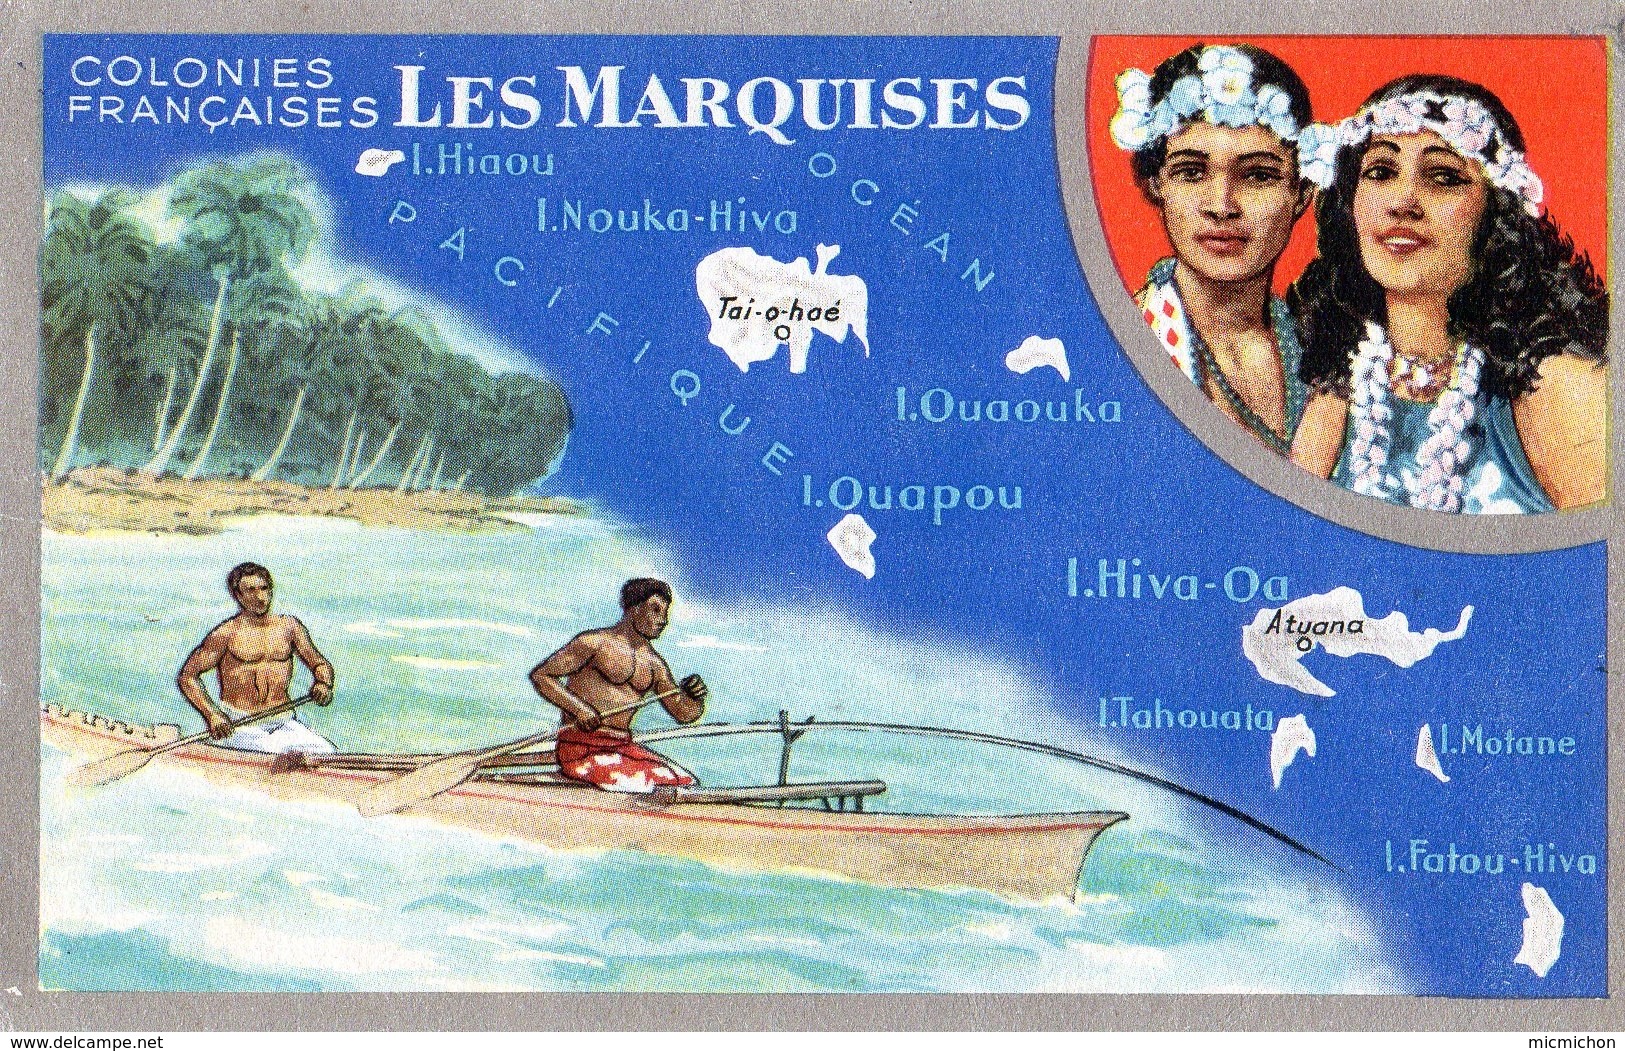 Carte LIon Noir Colonies Françaises Les MARQUISES (2) - Advertising